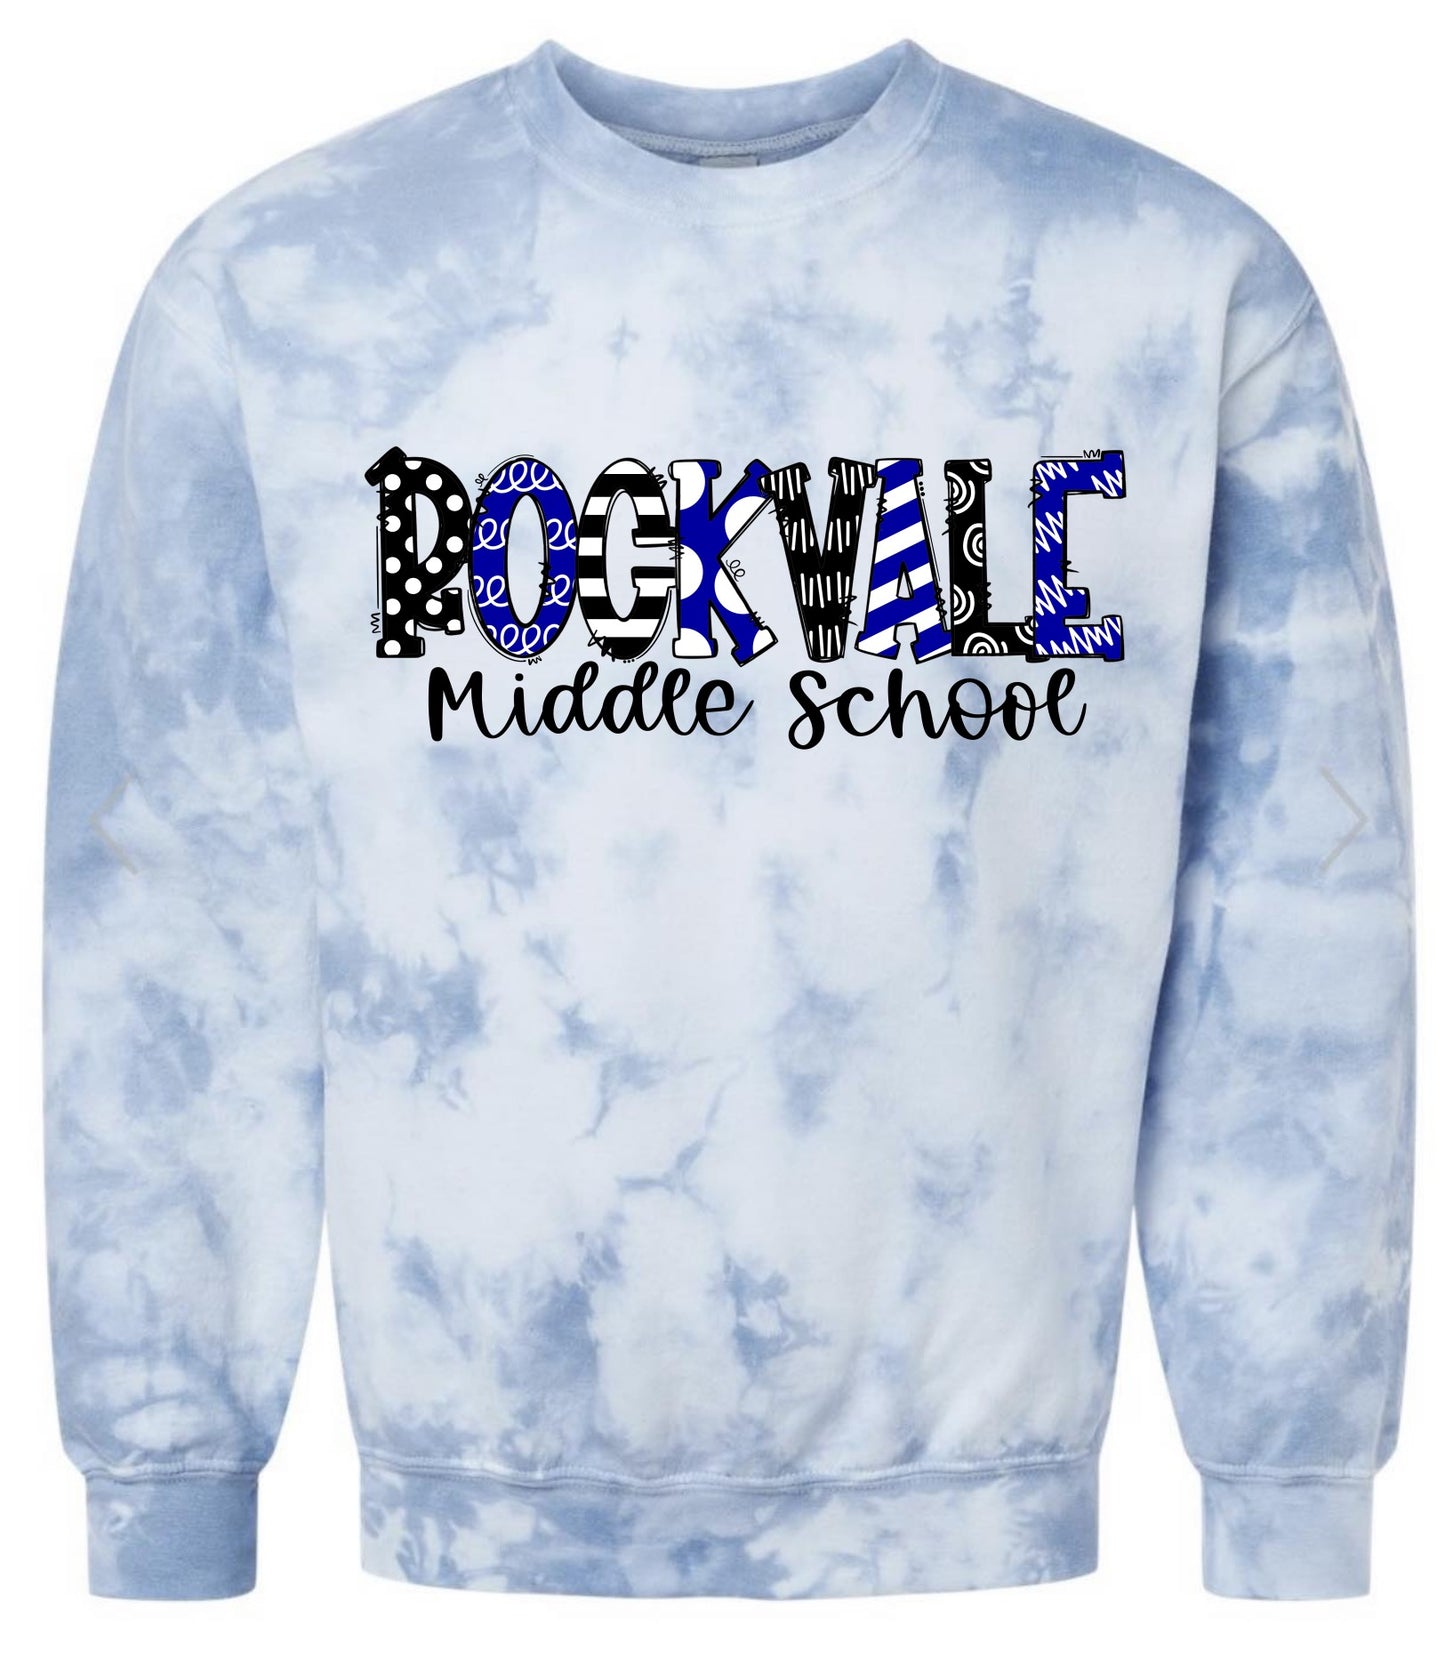 **LIMITED EDITION** Rockvale Middle School Tie Dye Sweatshirt